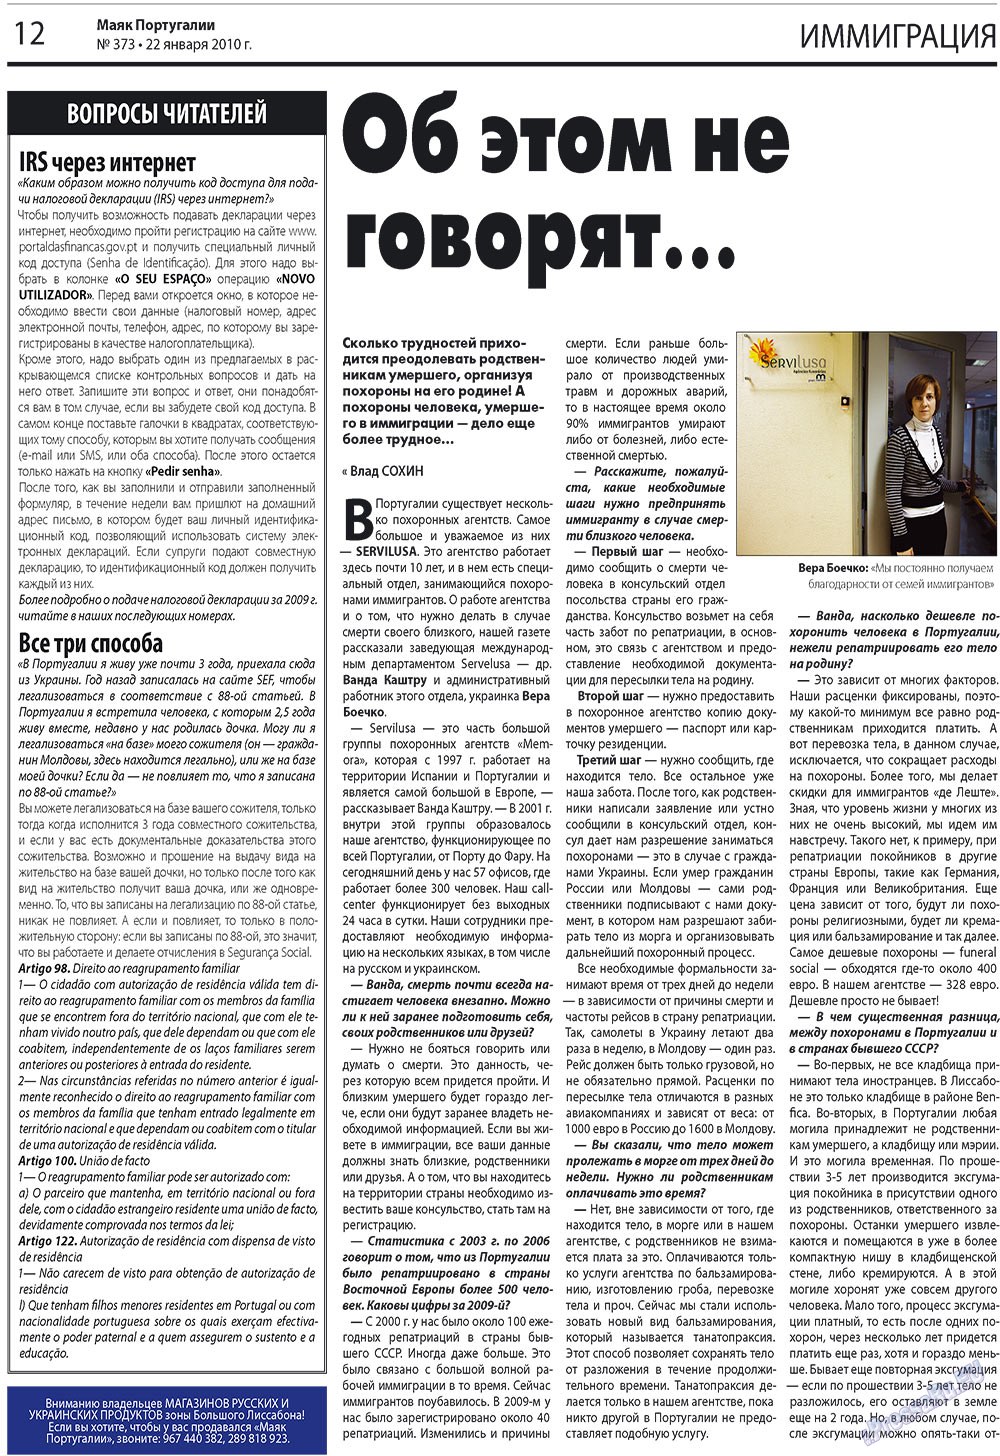 Маяк Португалии (газета). 2010 год, номер 373, стр. 12